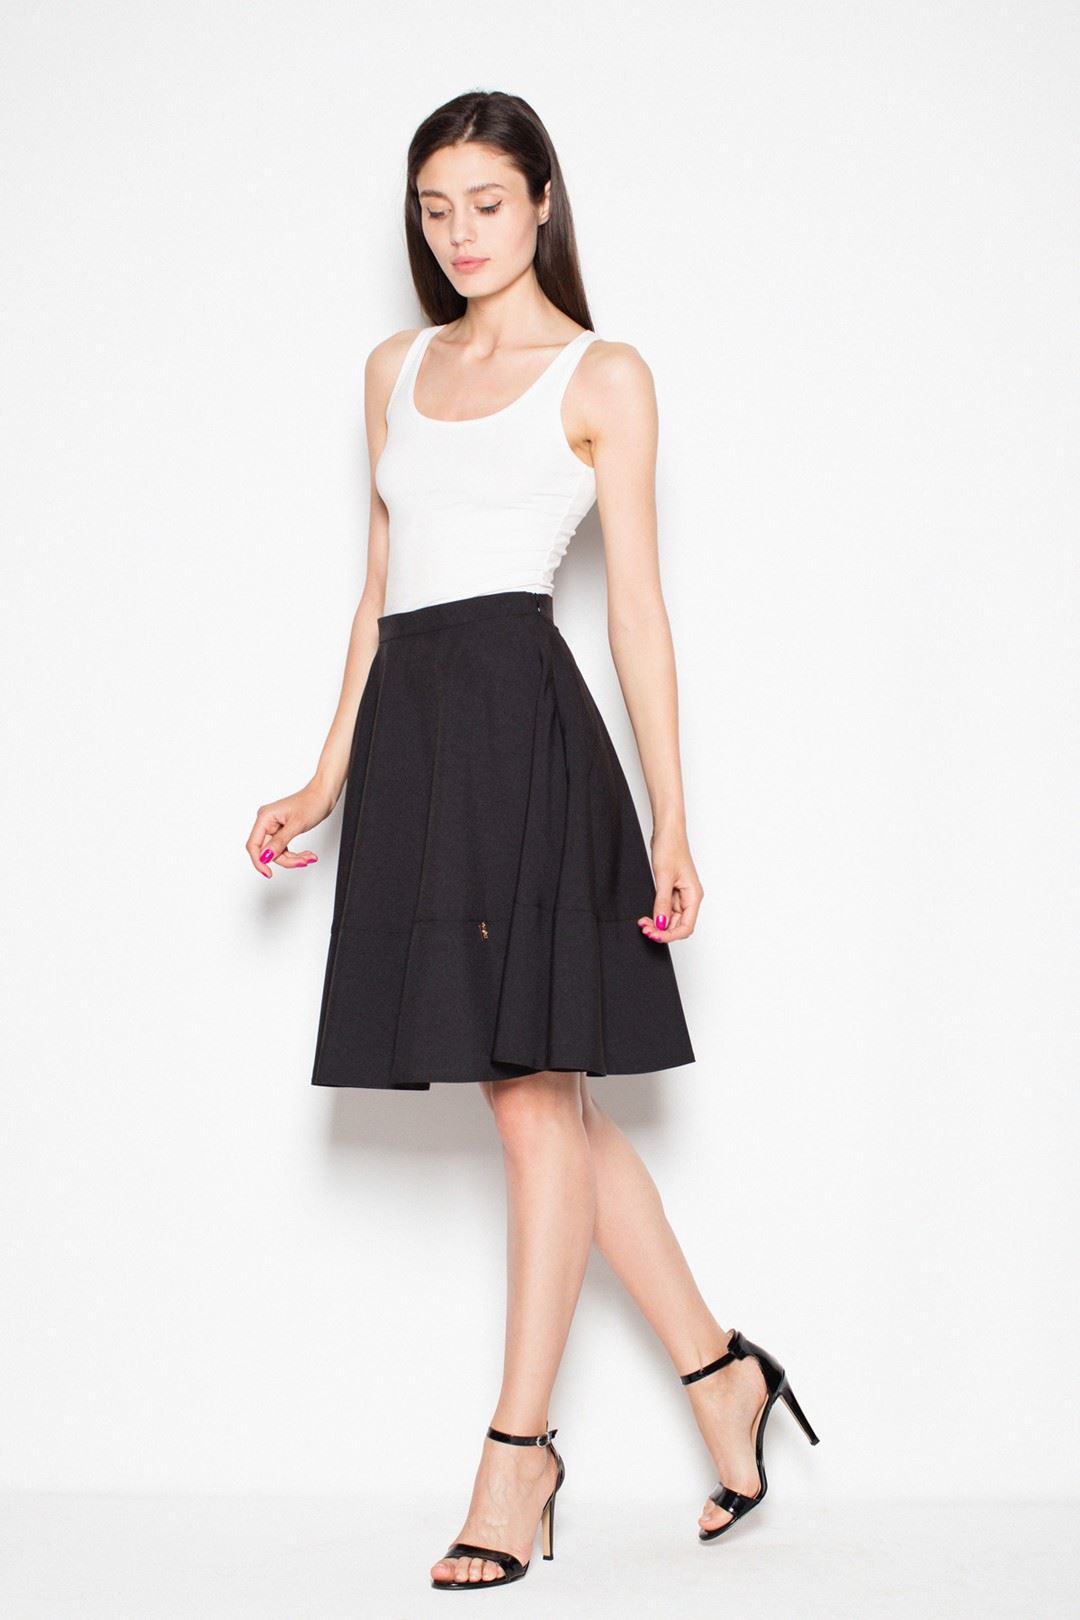 Skirt VT051 Black S